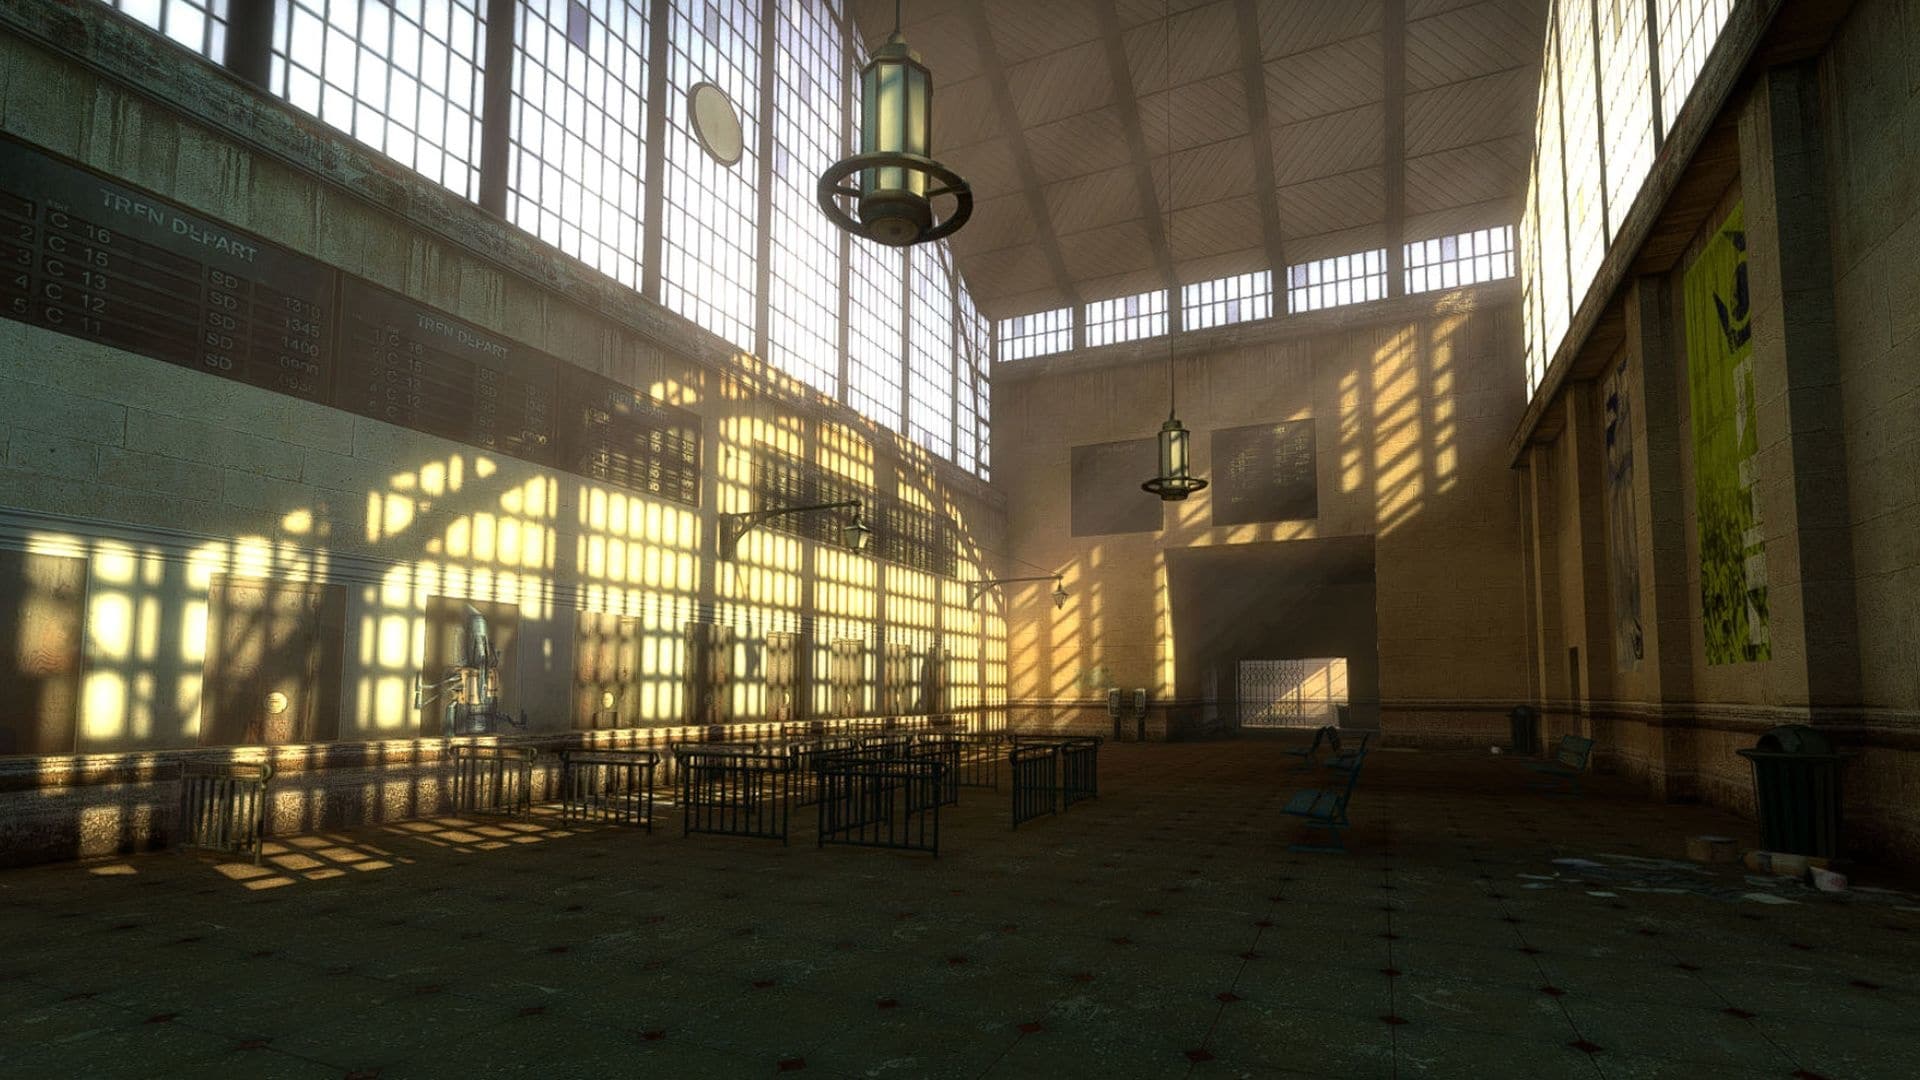 (Na przyszłość zespół modów oprócz implementacji epizodów z Half-Life obiecał aktualizację grafiki, która powinna zoptymalizować m.in. tekstury i nieco przestarzałe oświetlenie gry)